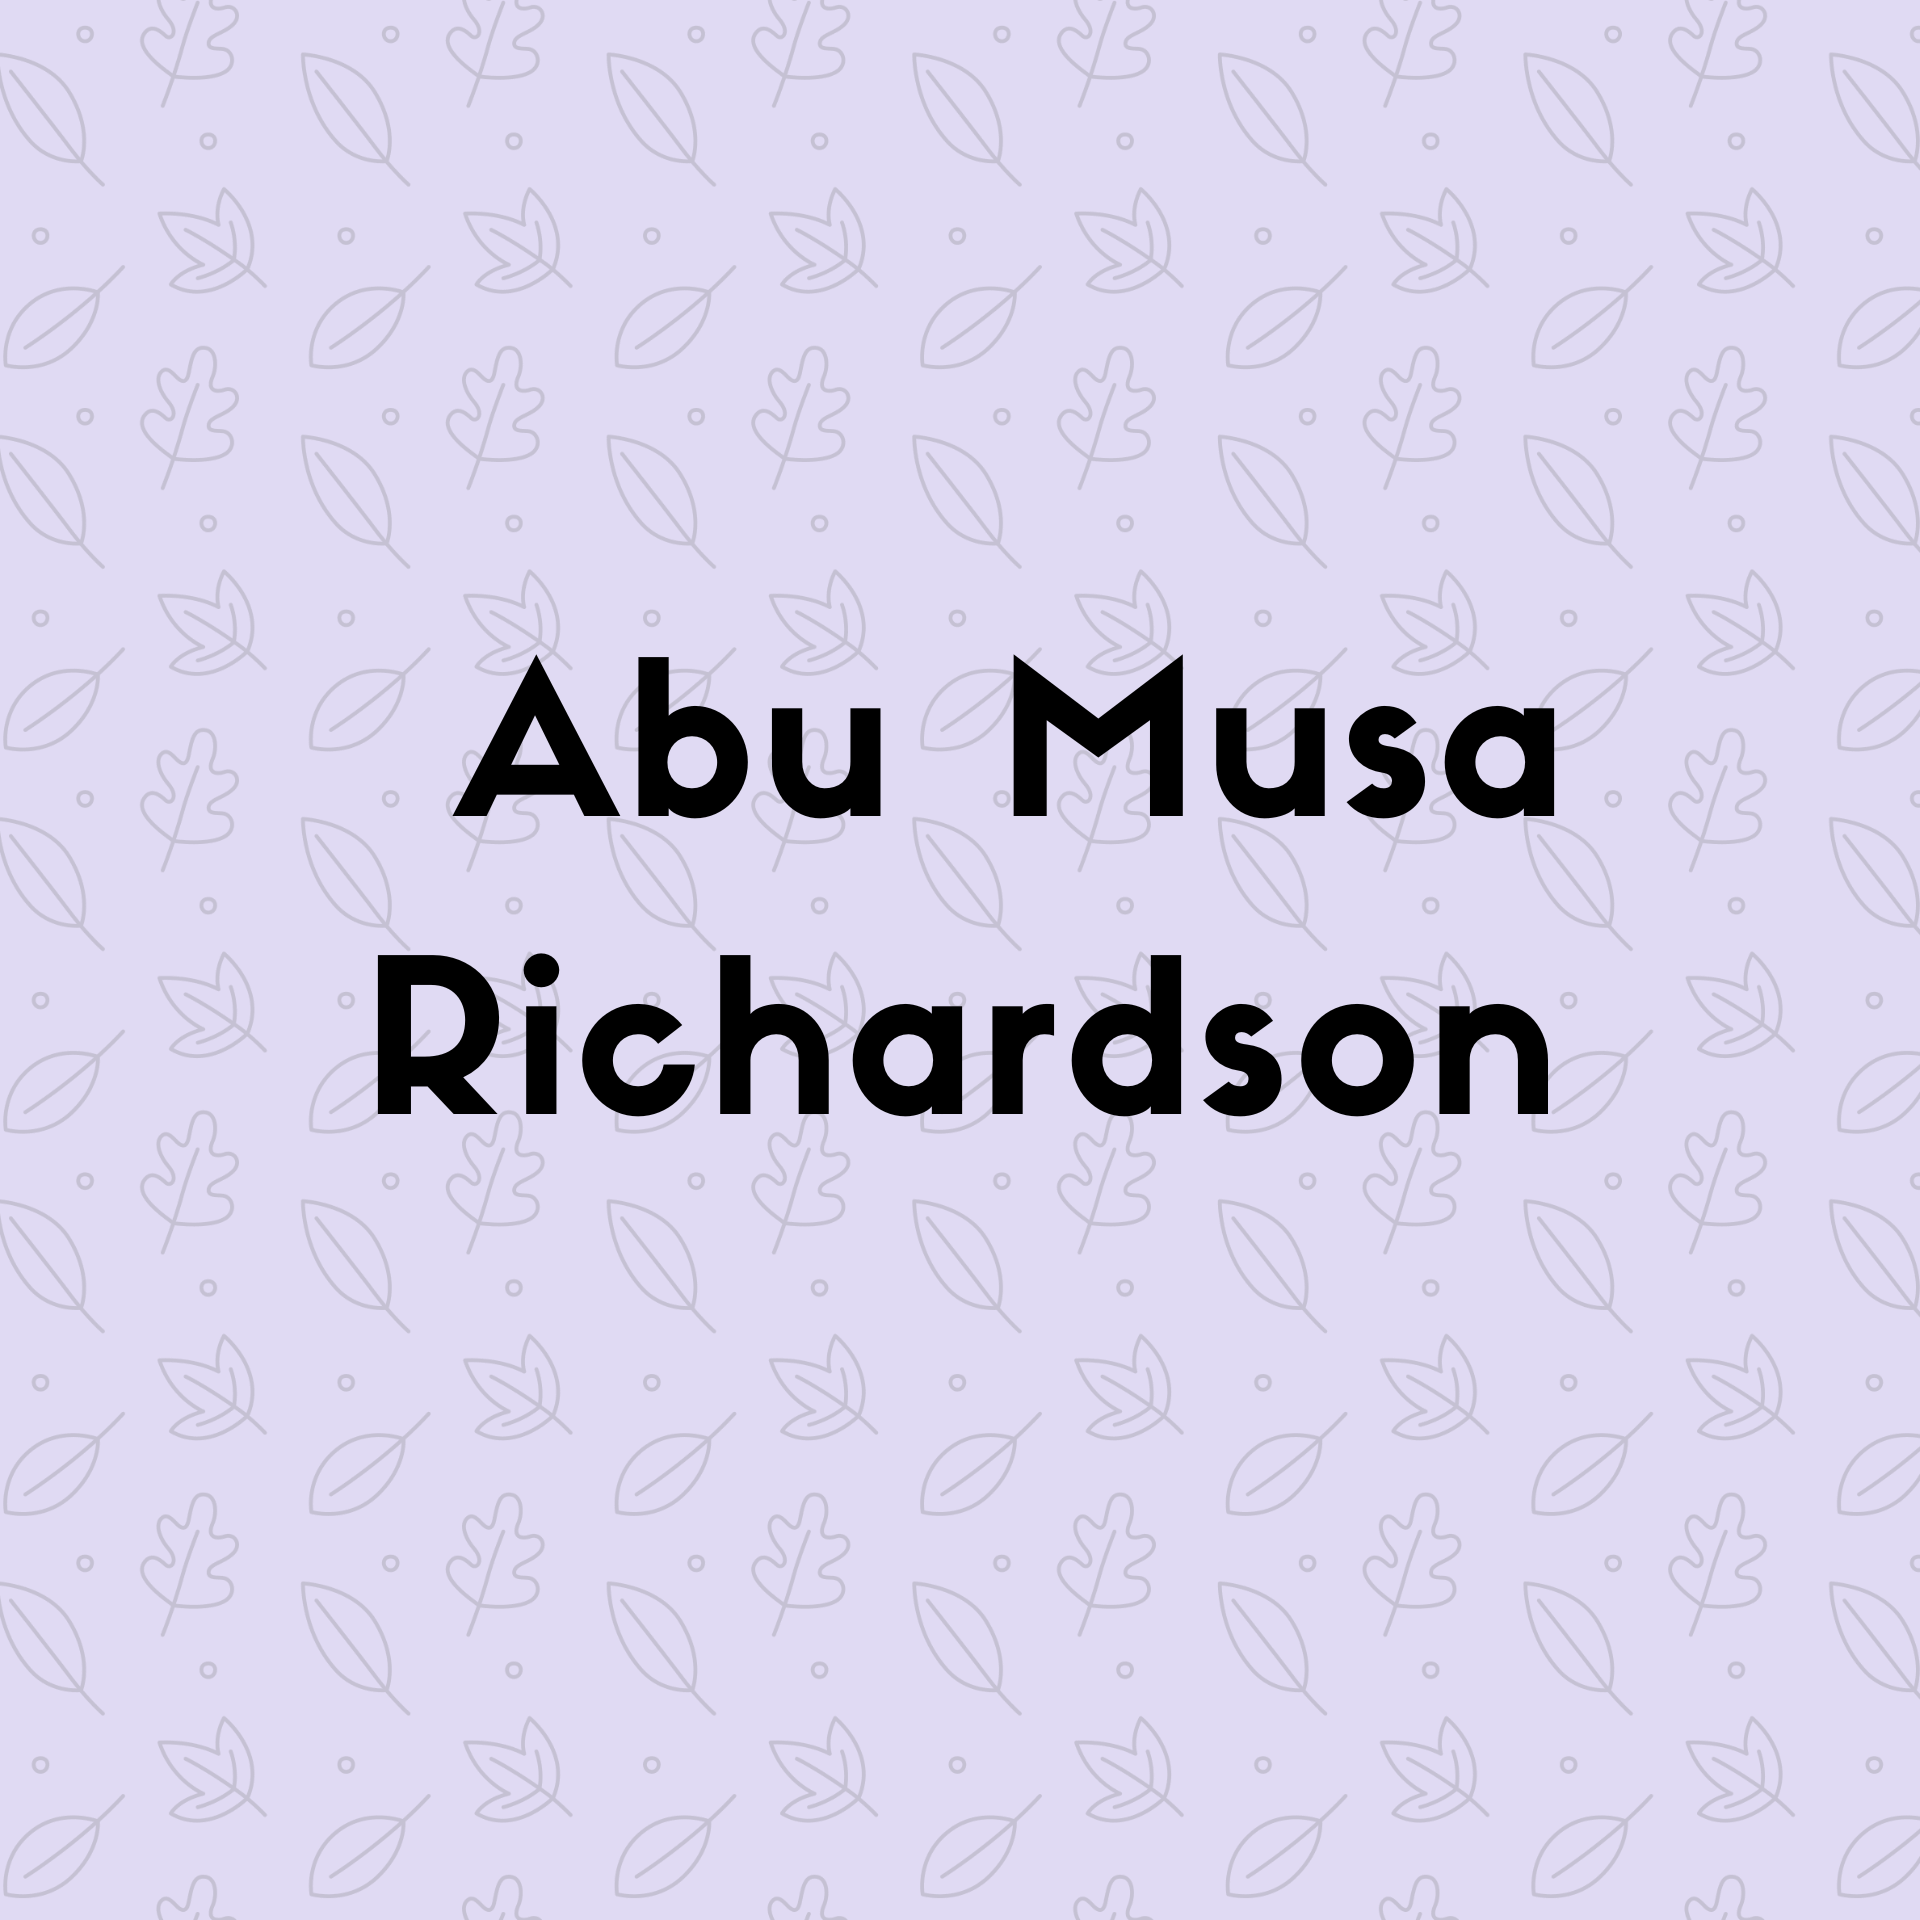  Abu Musa Richardson